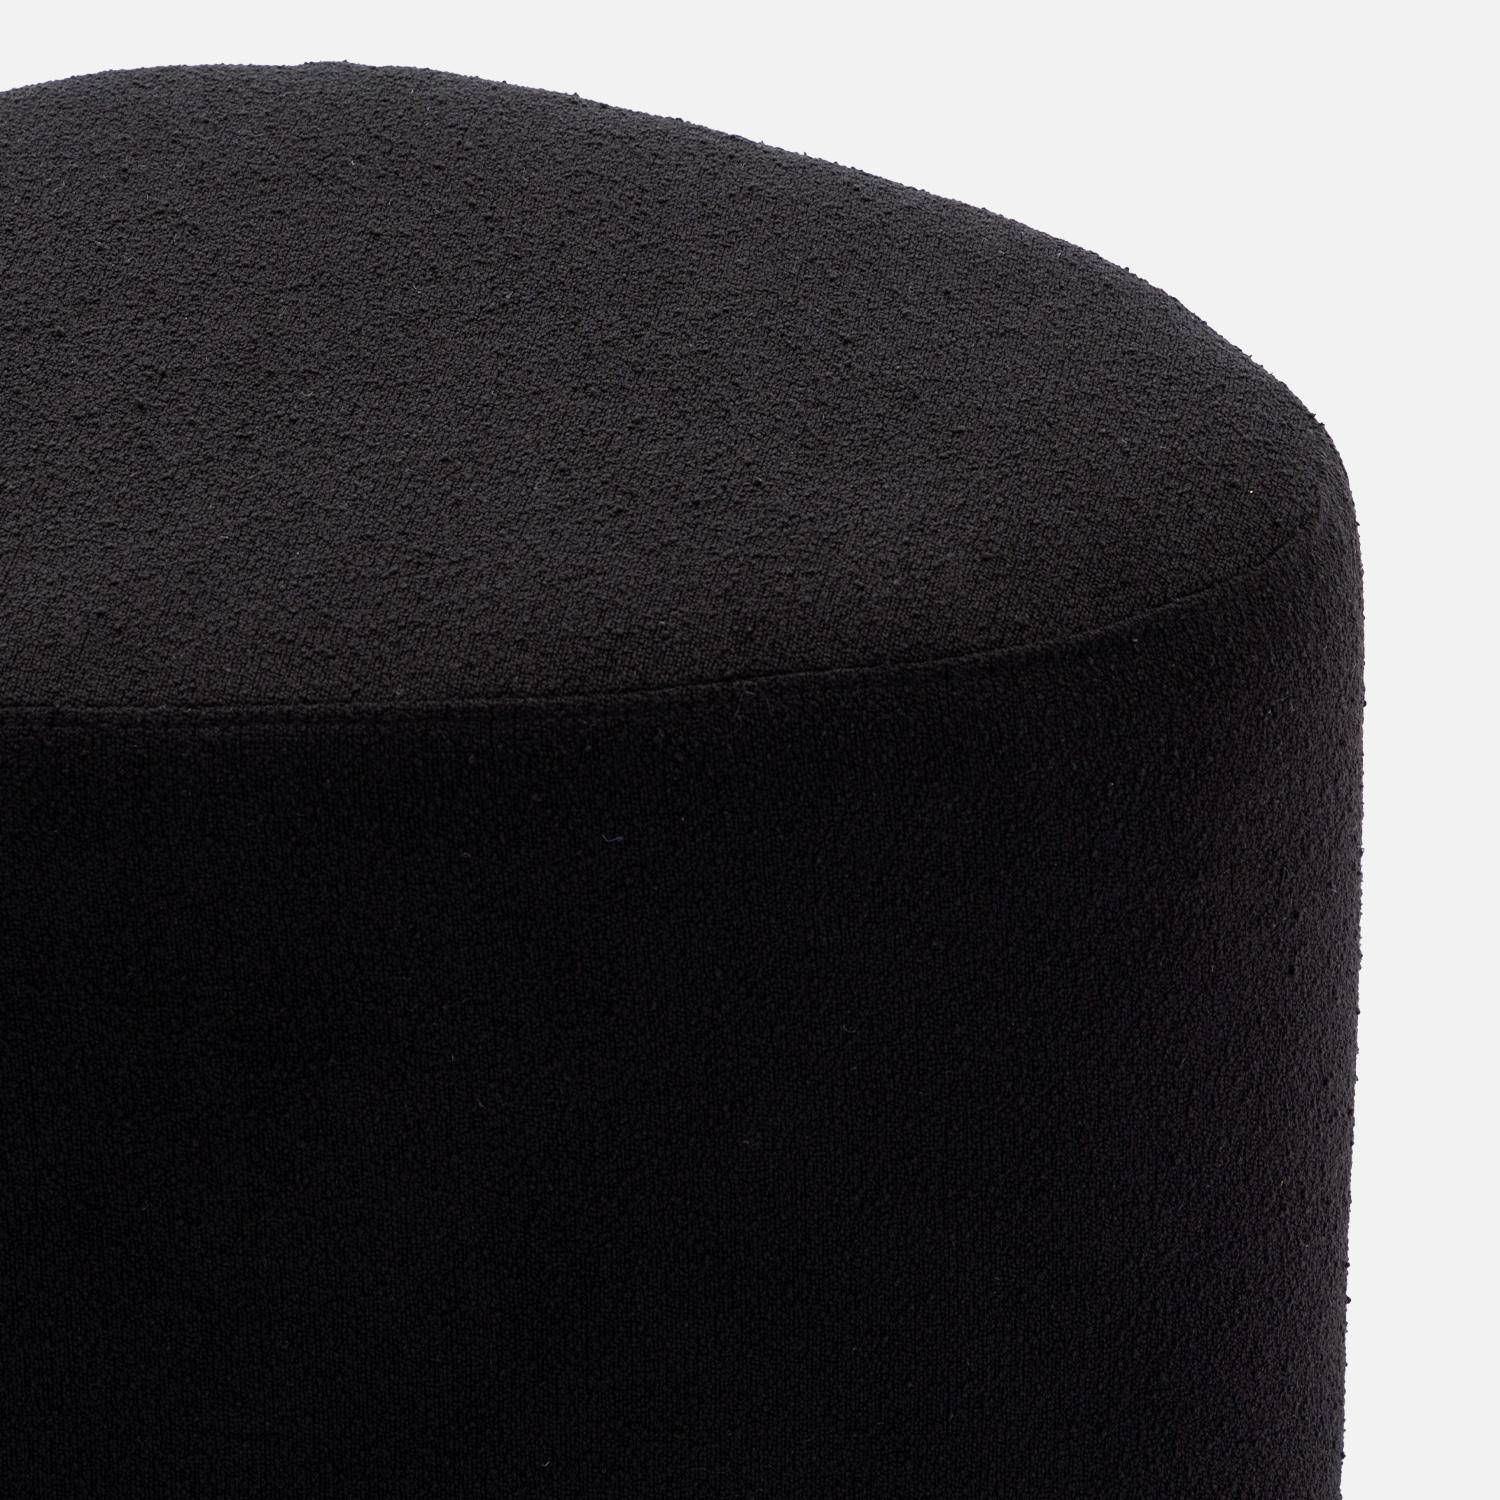 sgabello, pouf a forma di ciottolo in tessuto nero, TAO L 60 x P 44 x H 40 cm Photo5